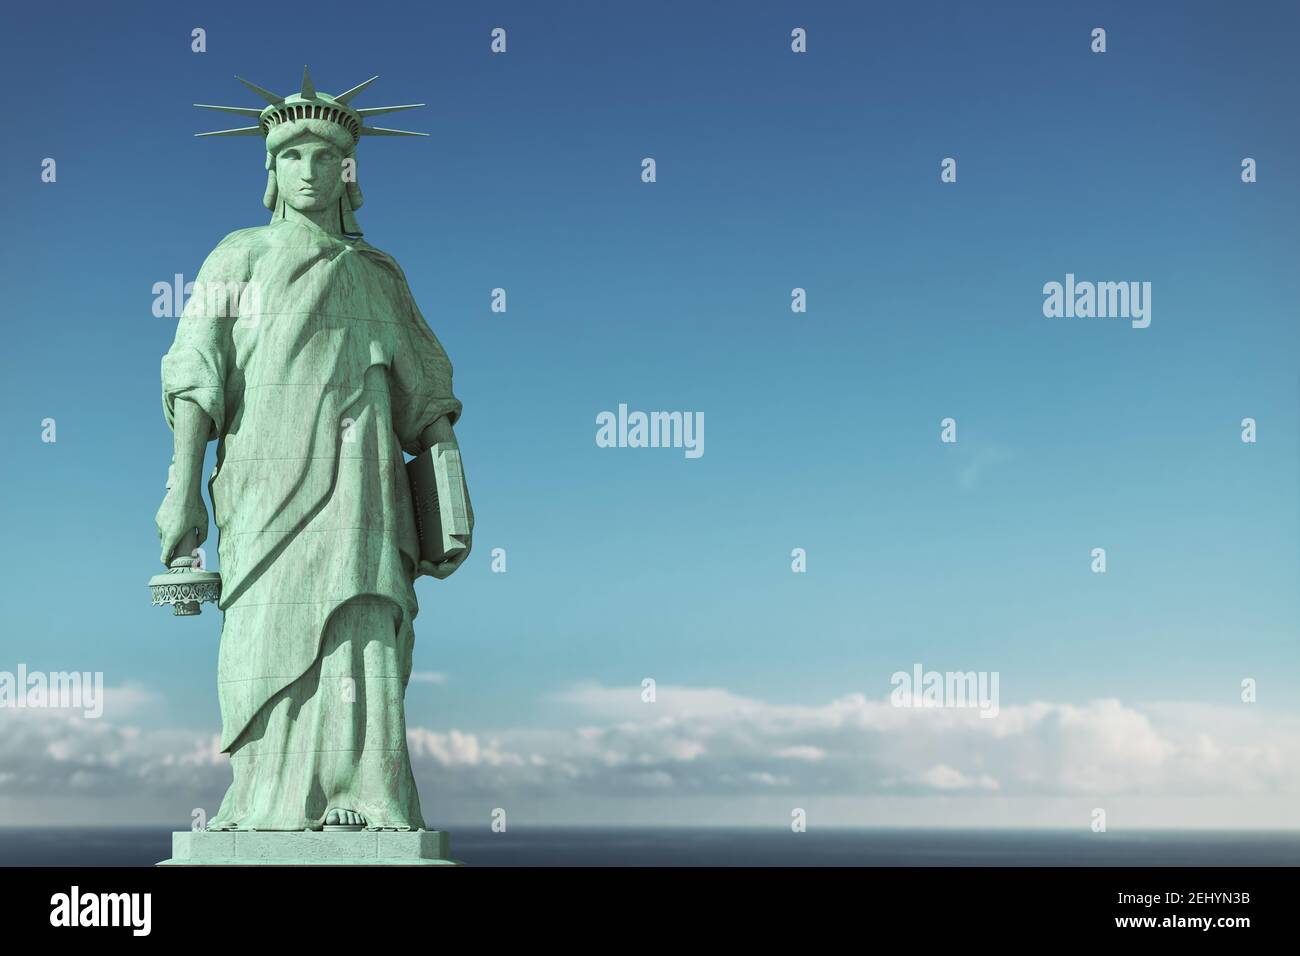 Amerikanische Depression, USA Demokratie Probleme Konzept. Traurige und depressive Freiheitsstatue mit einer abgesenkten Fackel. 3D Abbildung Stockfoto